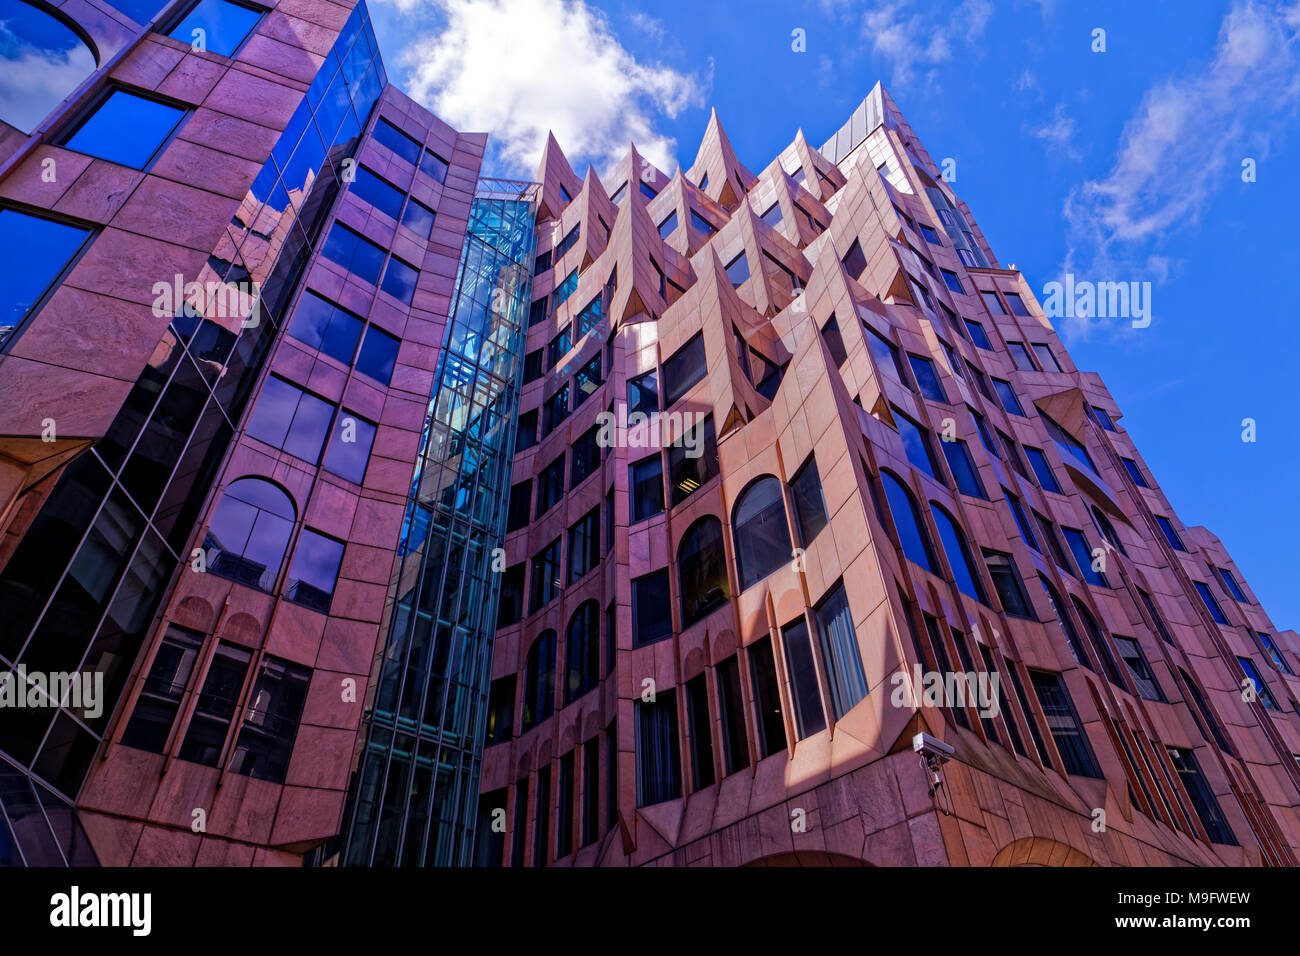 42,494.00163 1 Minster Court, London, England, kreative moderne Architektur weiten hohen gezackten roten Backsteingebäude, viele Fenster, blauer Himmel Stockfoto